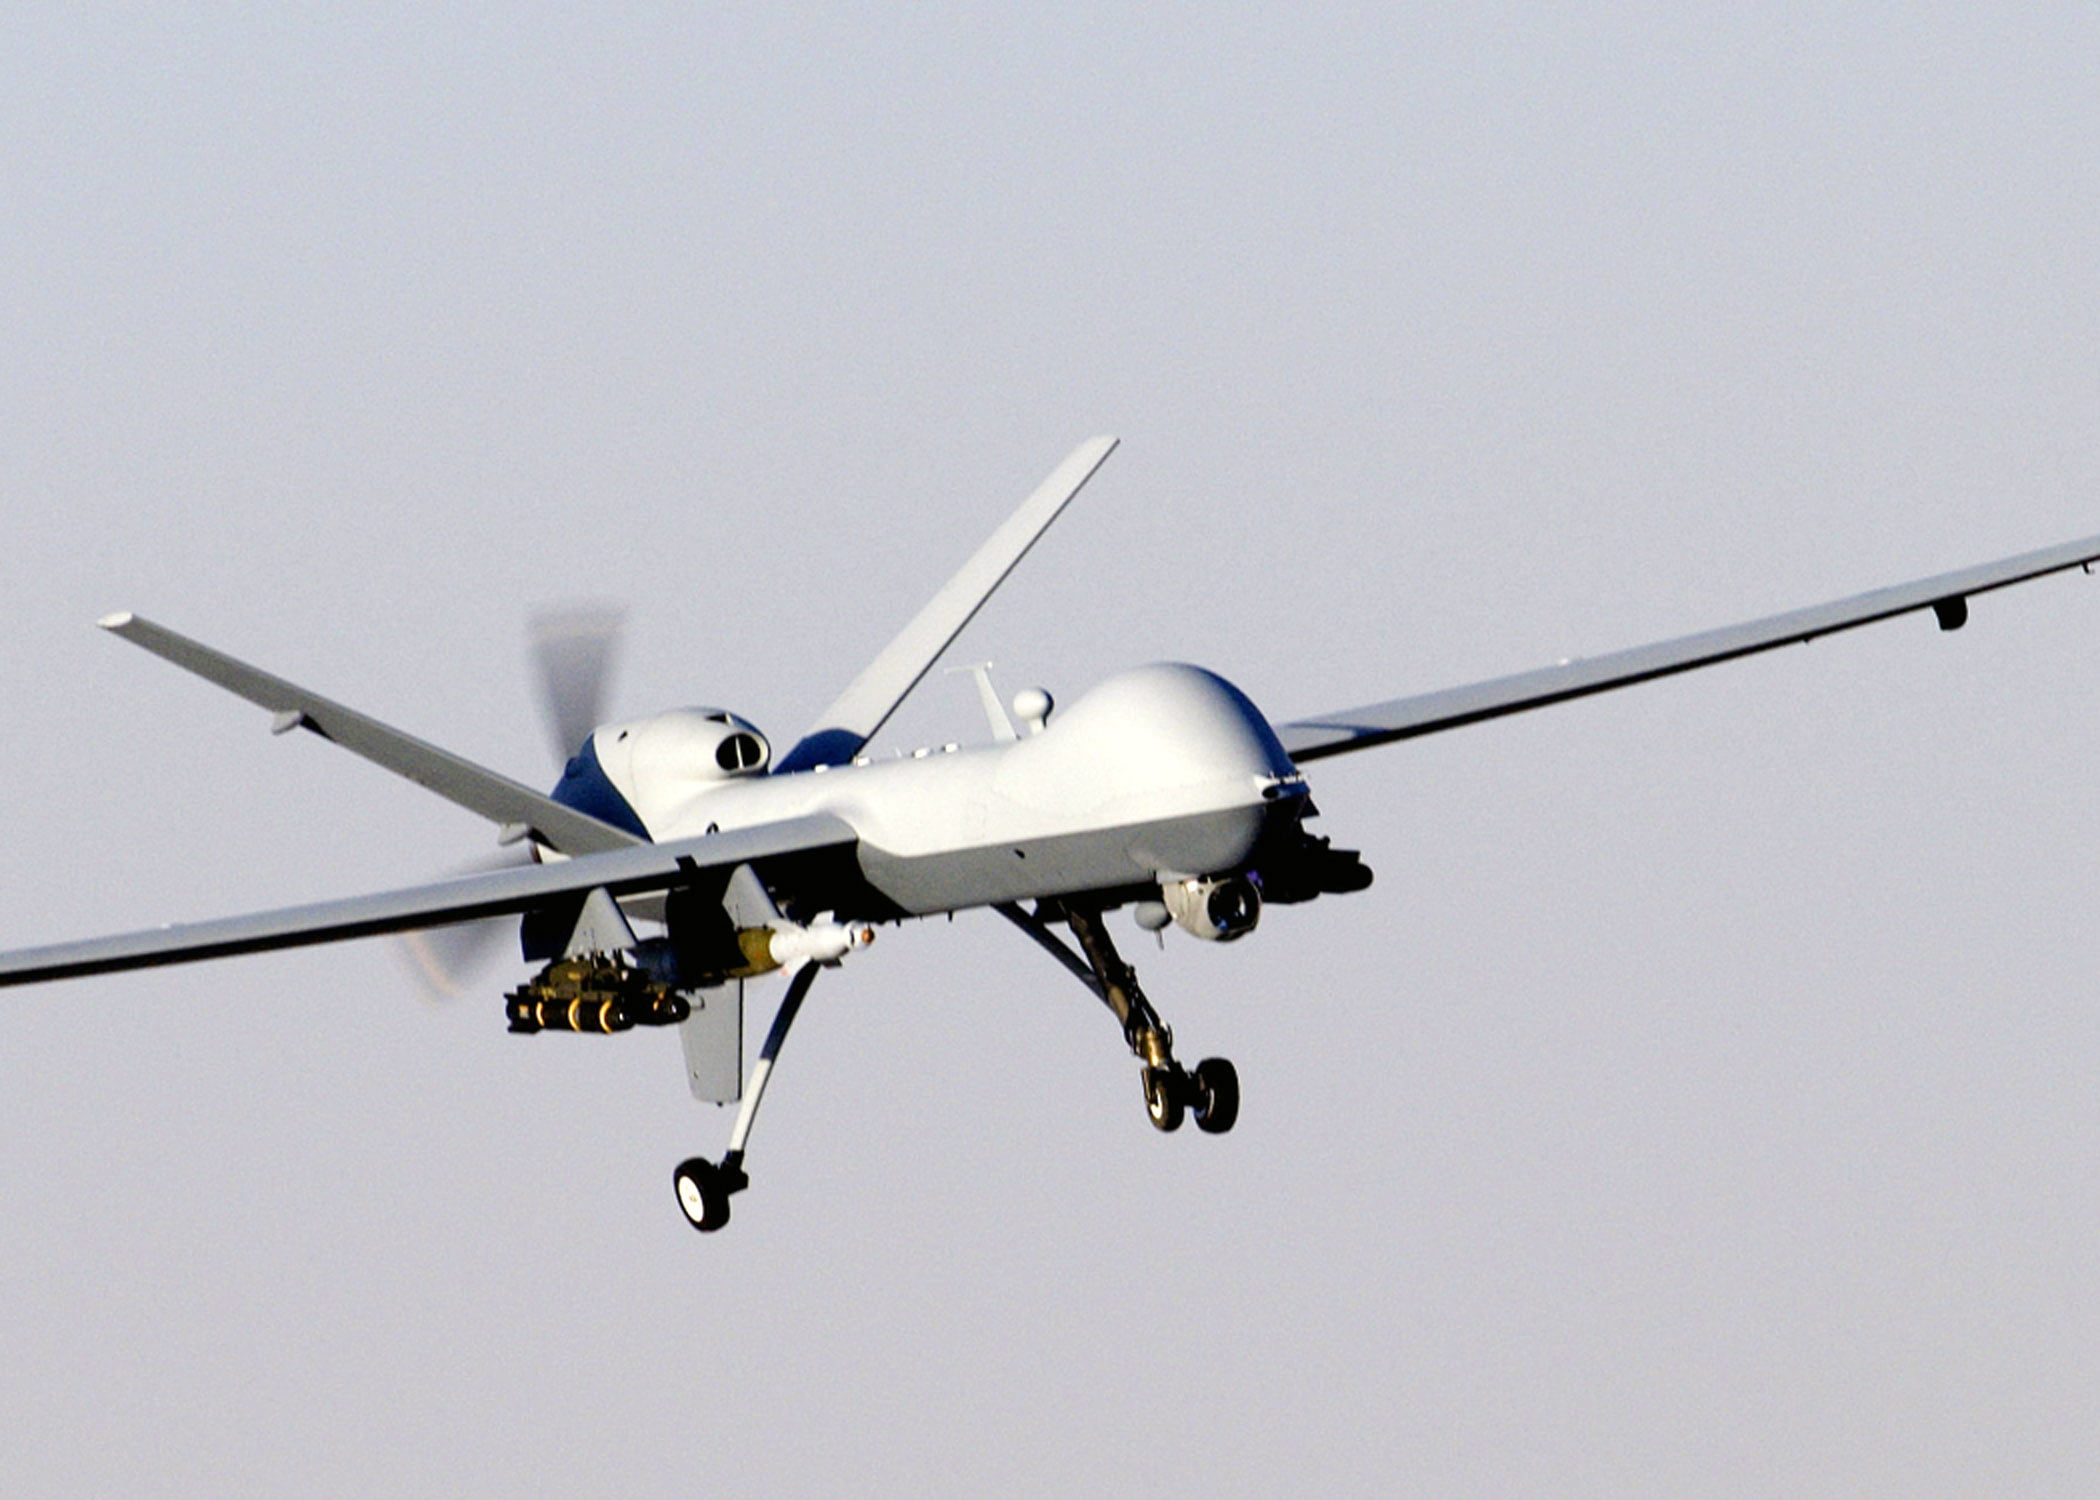 La police met en garde contre le vol illégal de drones le 17 mai - 3